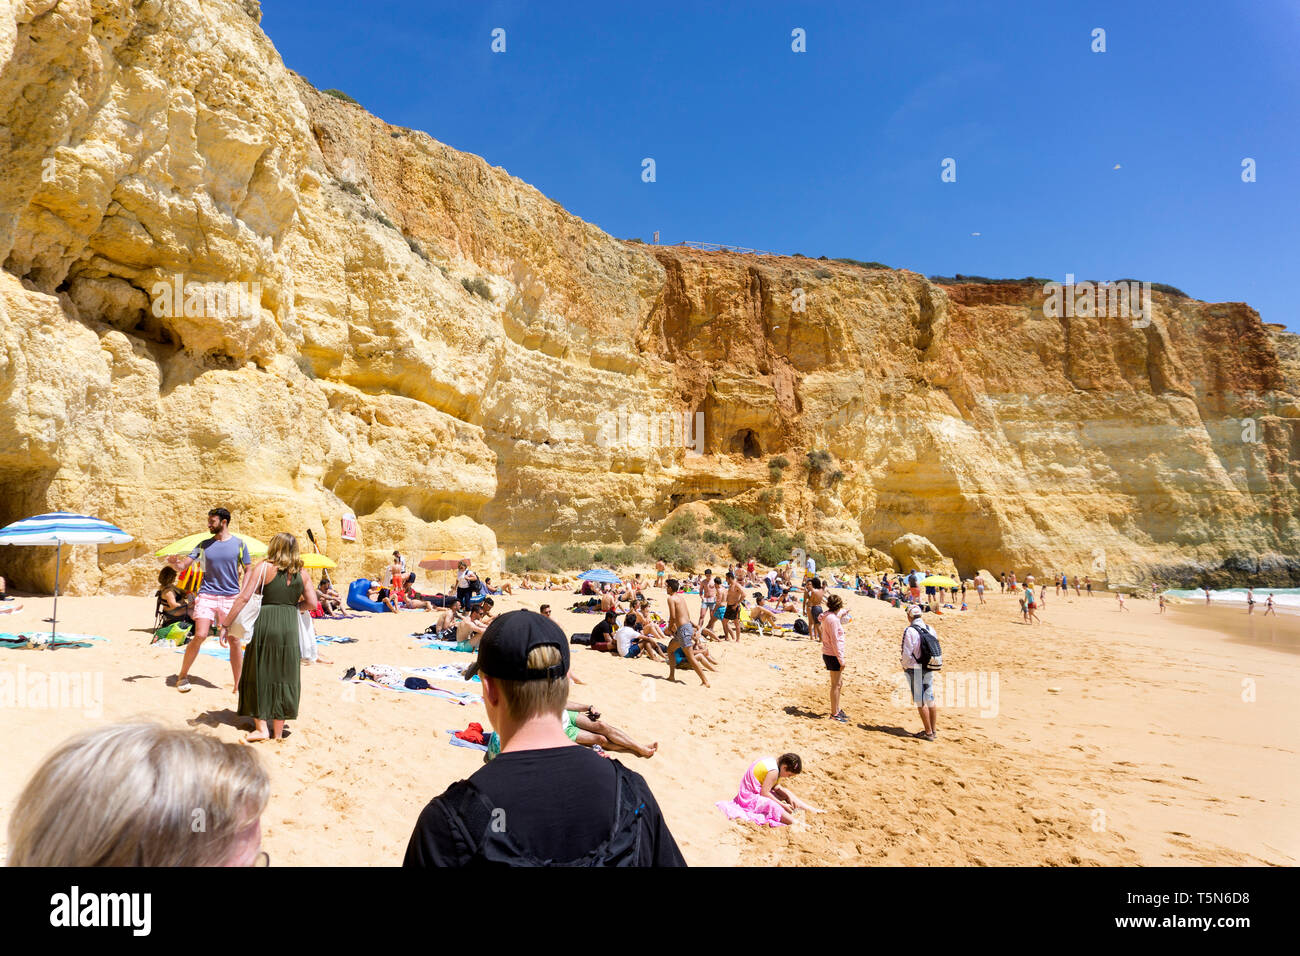 Benagil beach in the Algarve in Portugal. 16 April 2019. Stock Photo